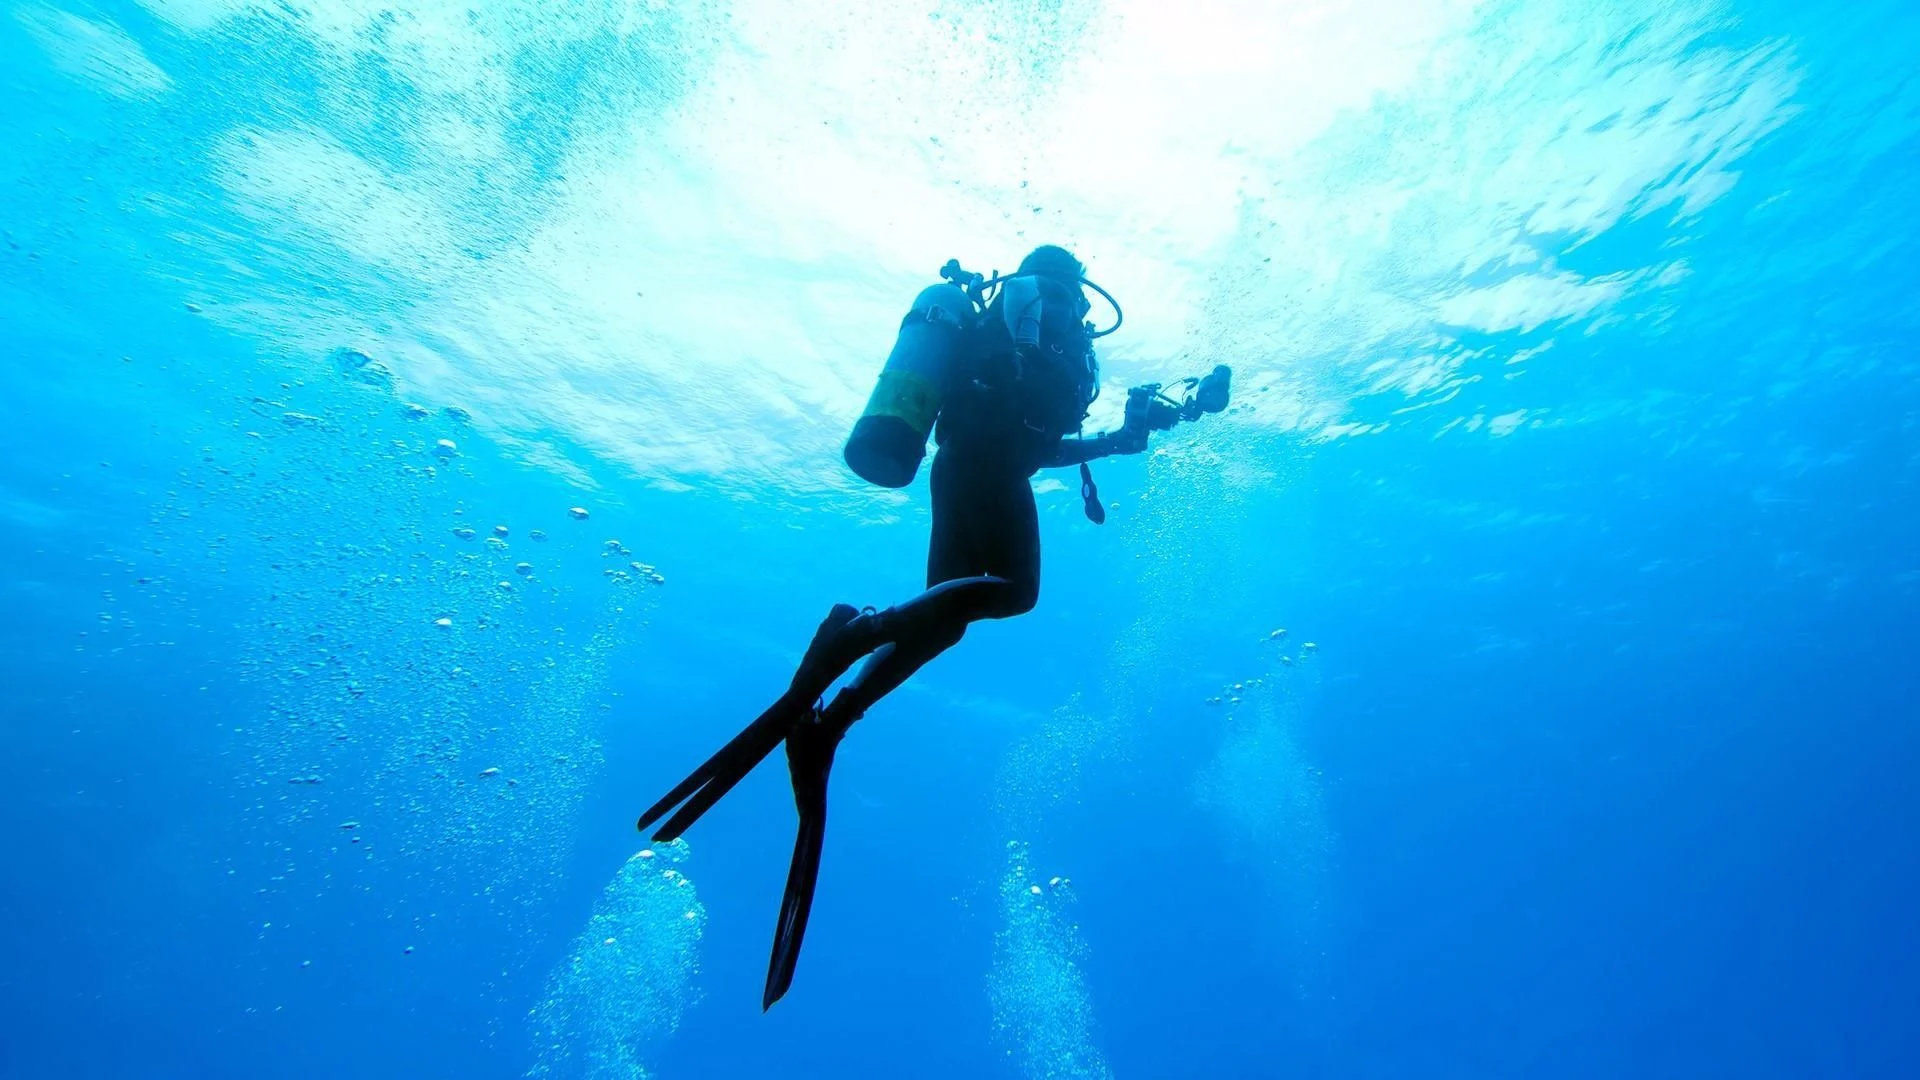 Diver wallpapers, Stunning underwater shots, Diving backgrounds, Oceanic wonders, 1920x1080 Full HD Desktop